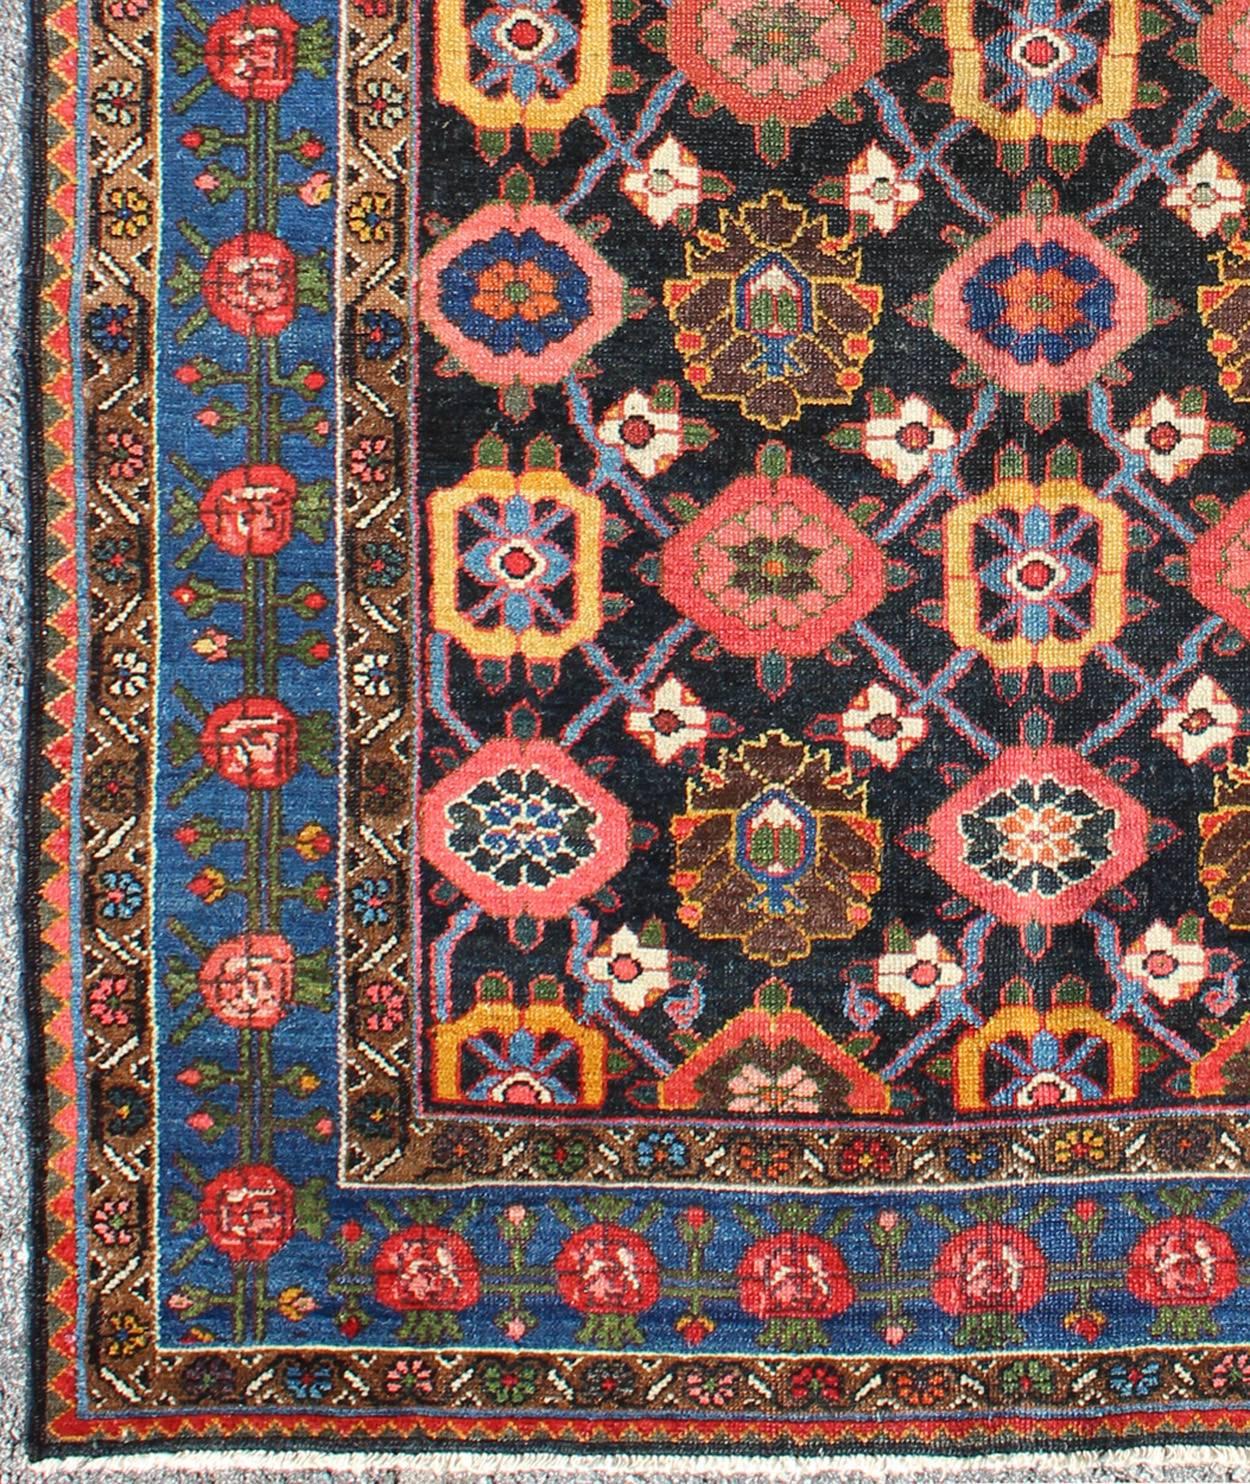 Cet ancien tapis persan Bakhtiar présente un motif floral sur toute sa surface dans des couleurs vives de rose, jaune, corail, orange, bleu et des touches d'ivoire. La bordure bleue est composée de fleurs roses et corail avec des vignes vertes. Les